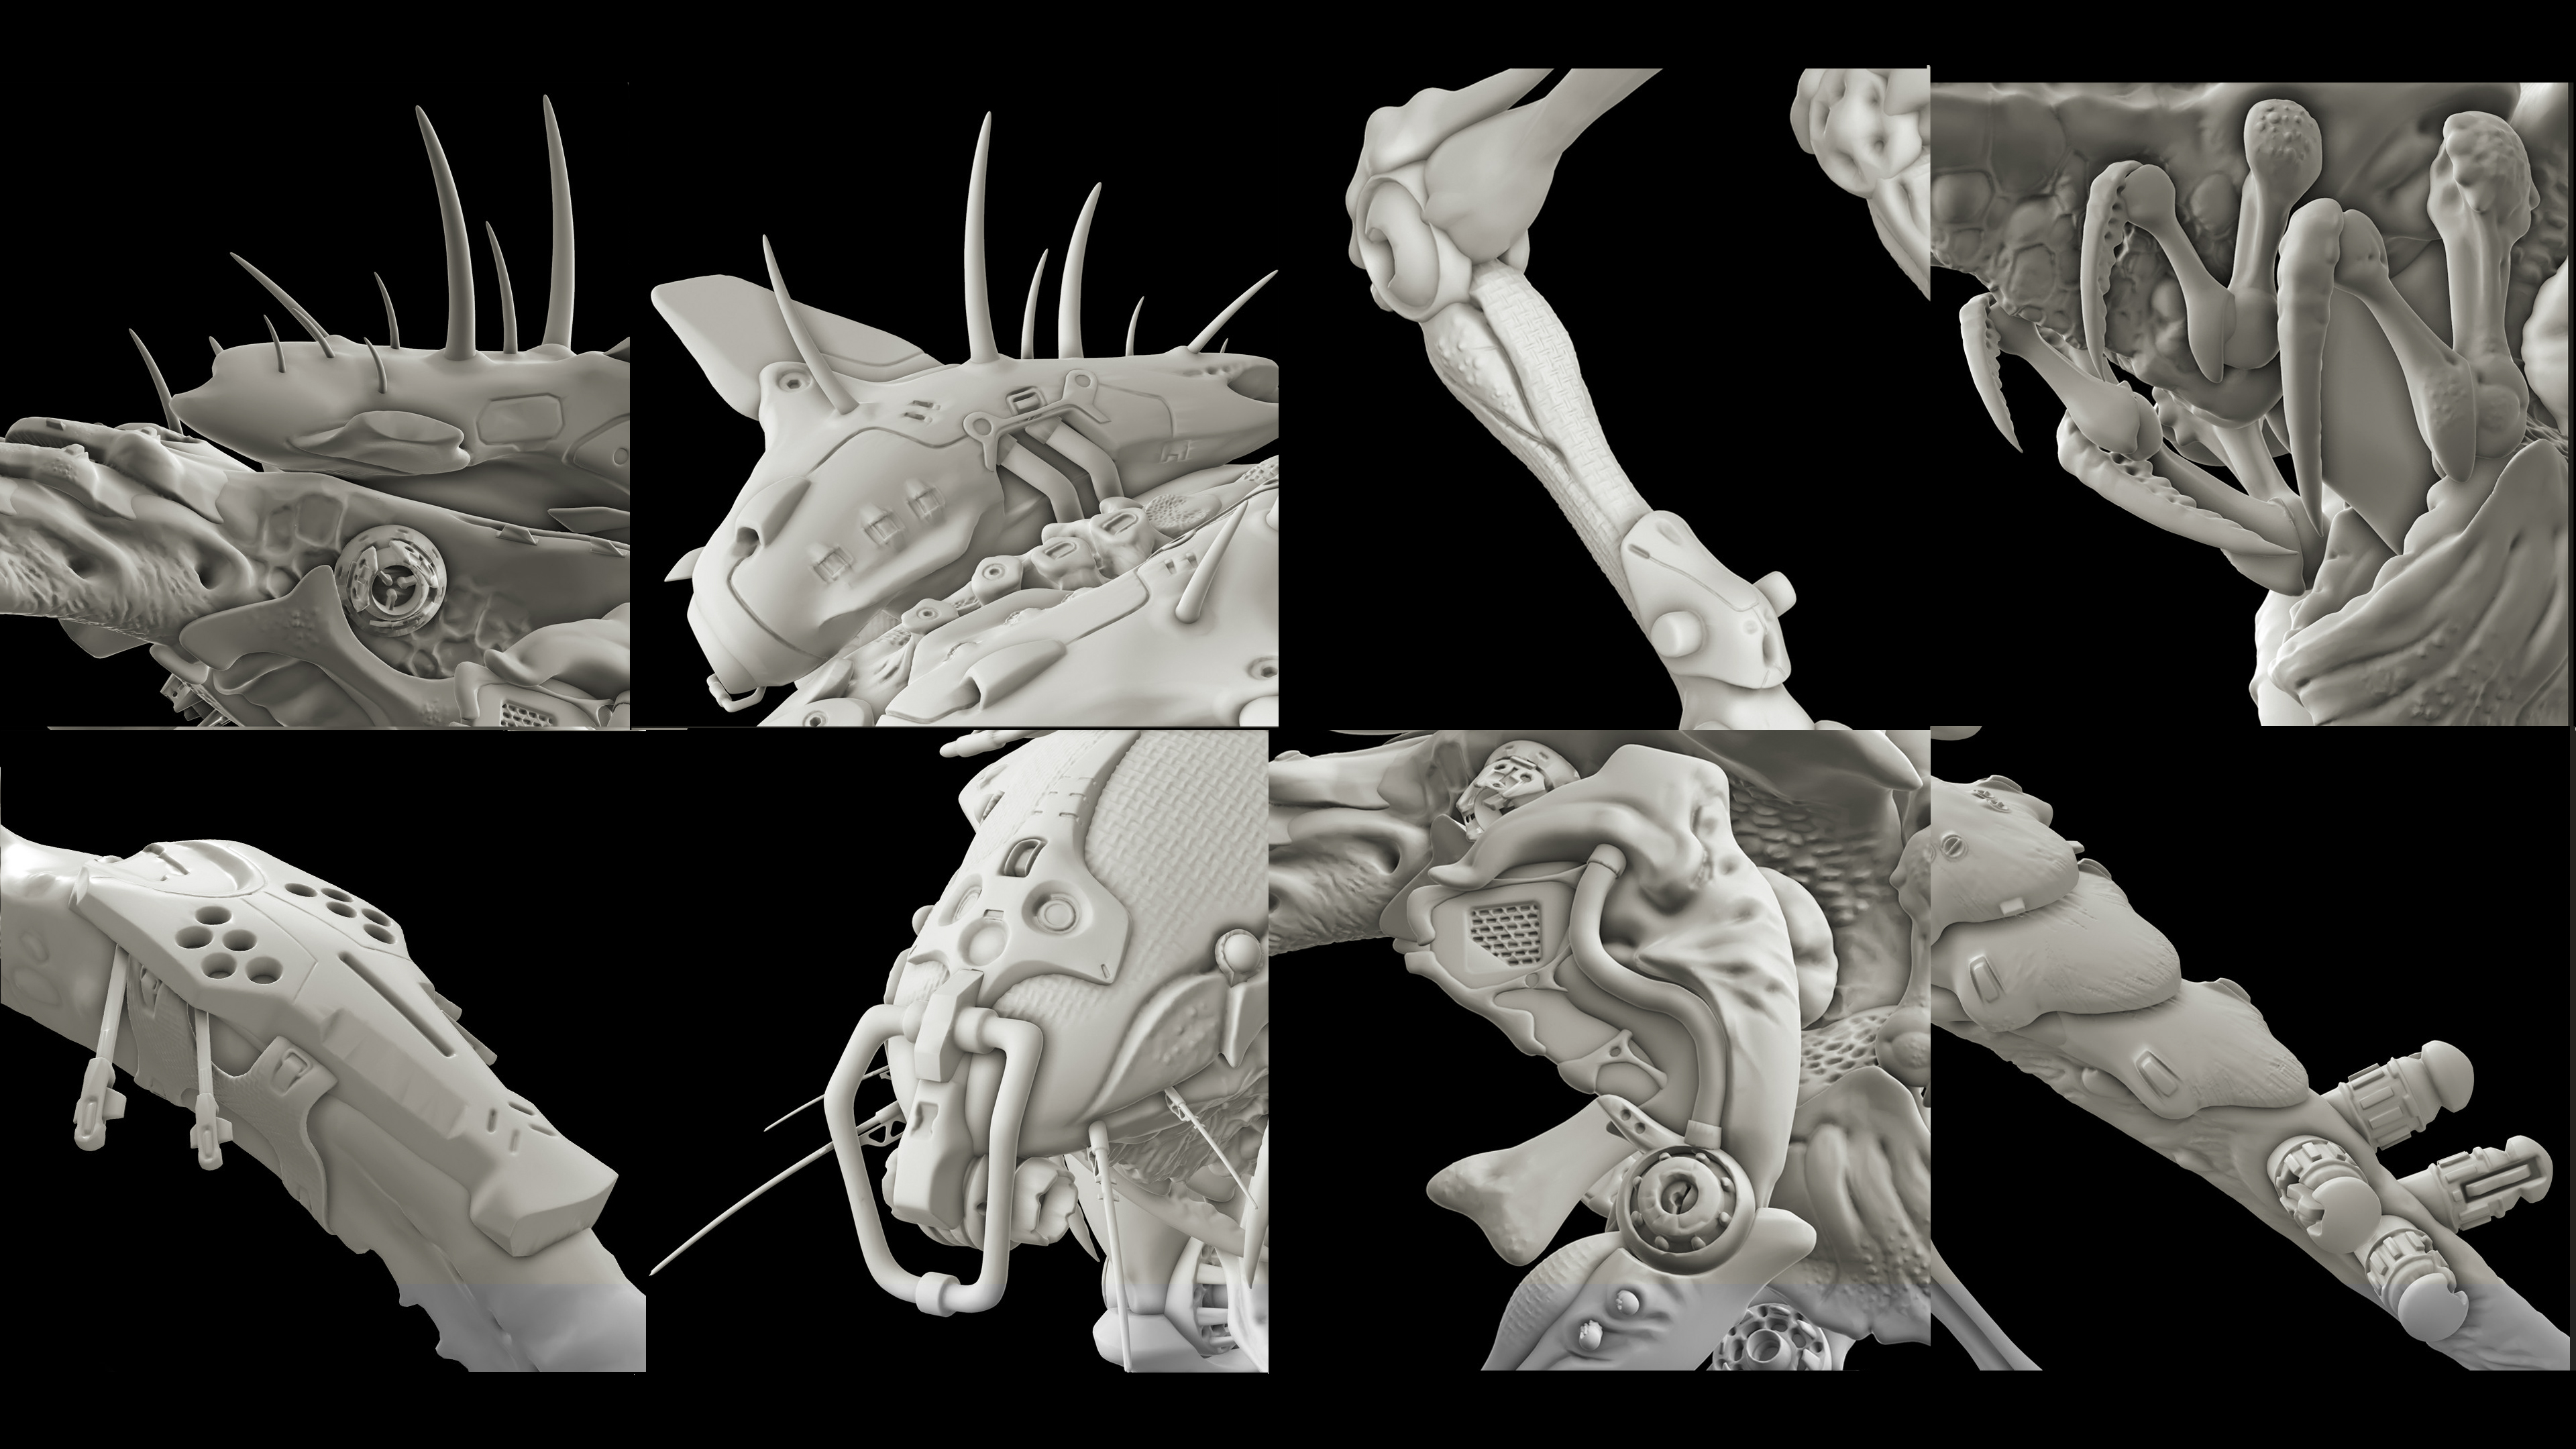 Osam posebnih kadrova, malo više približenih 3D modelu organskog 3D modela sa namjerom boljeg uvida u detalje na njemu.